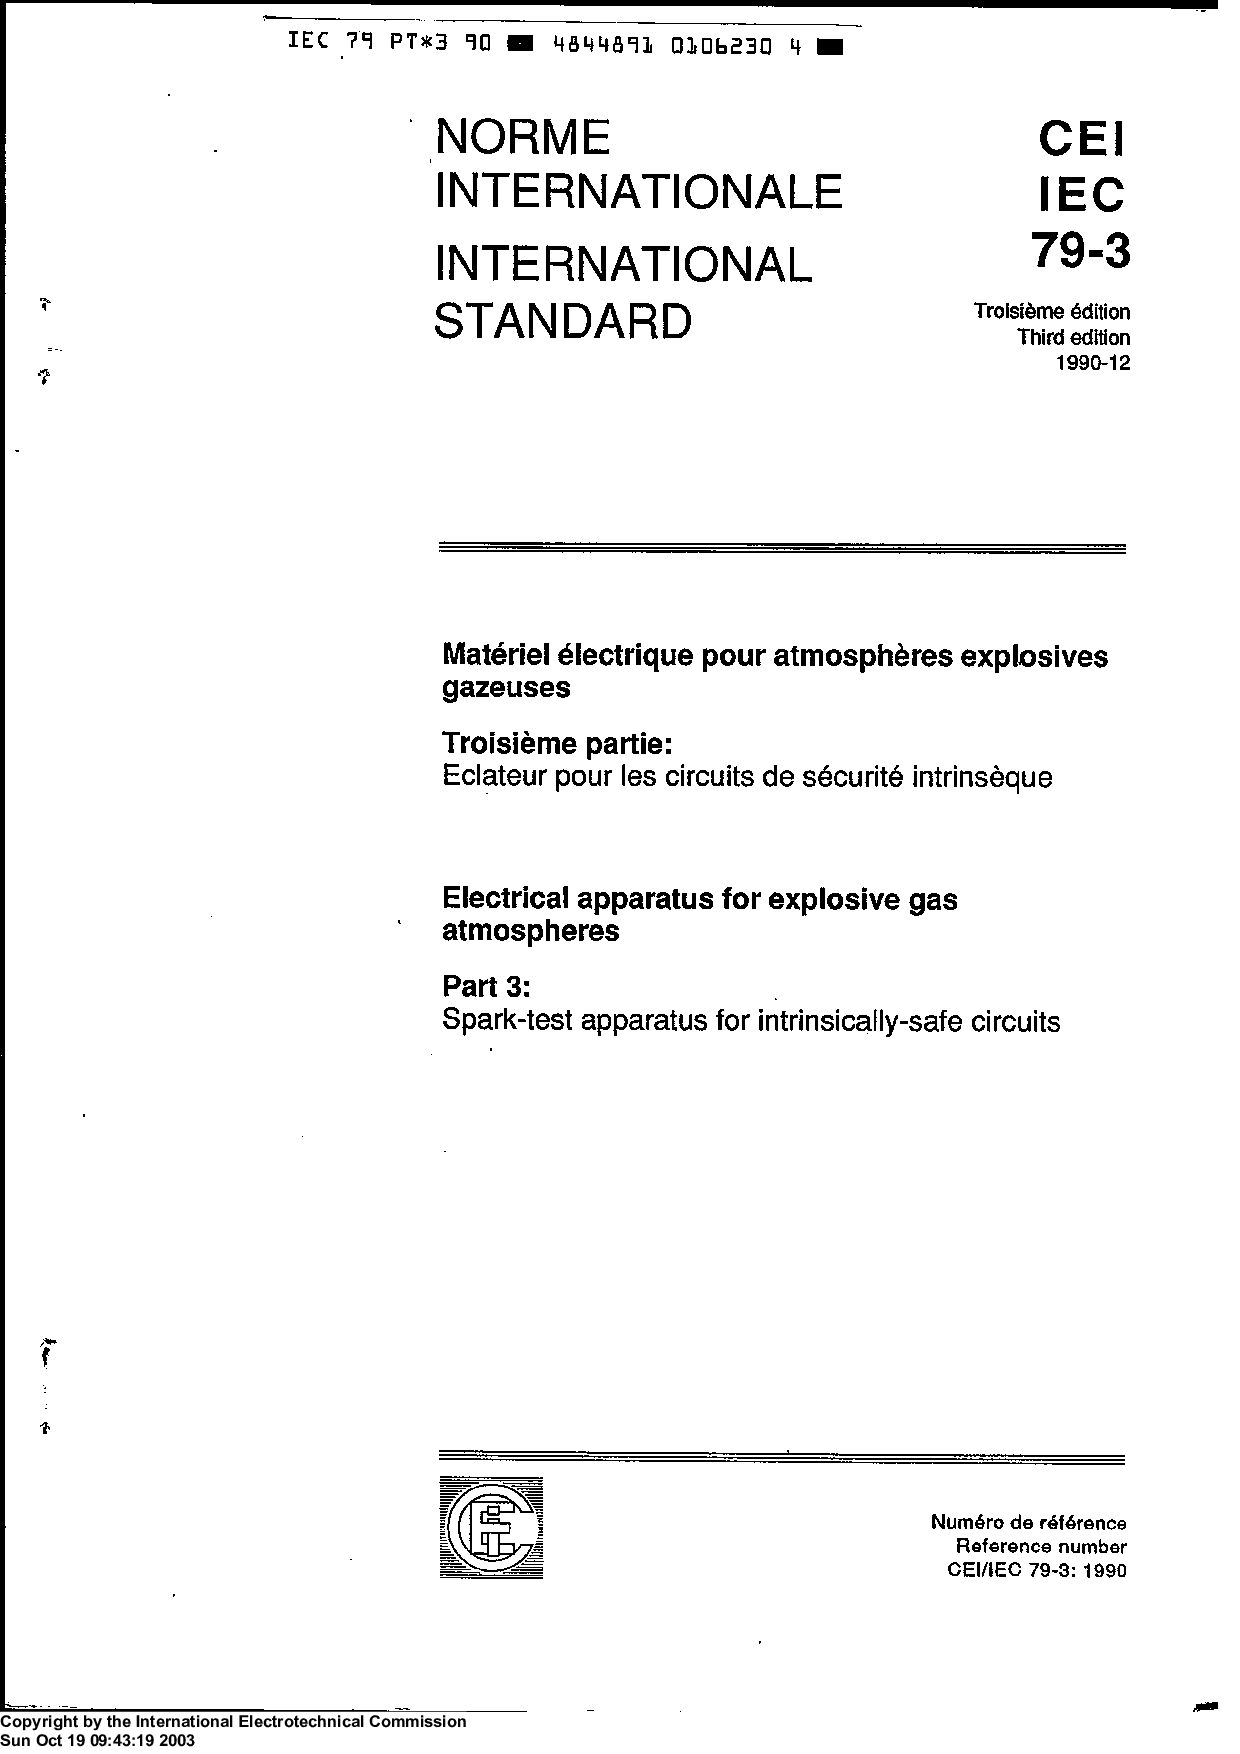 IEC 60079-3:1990